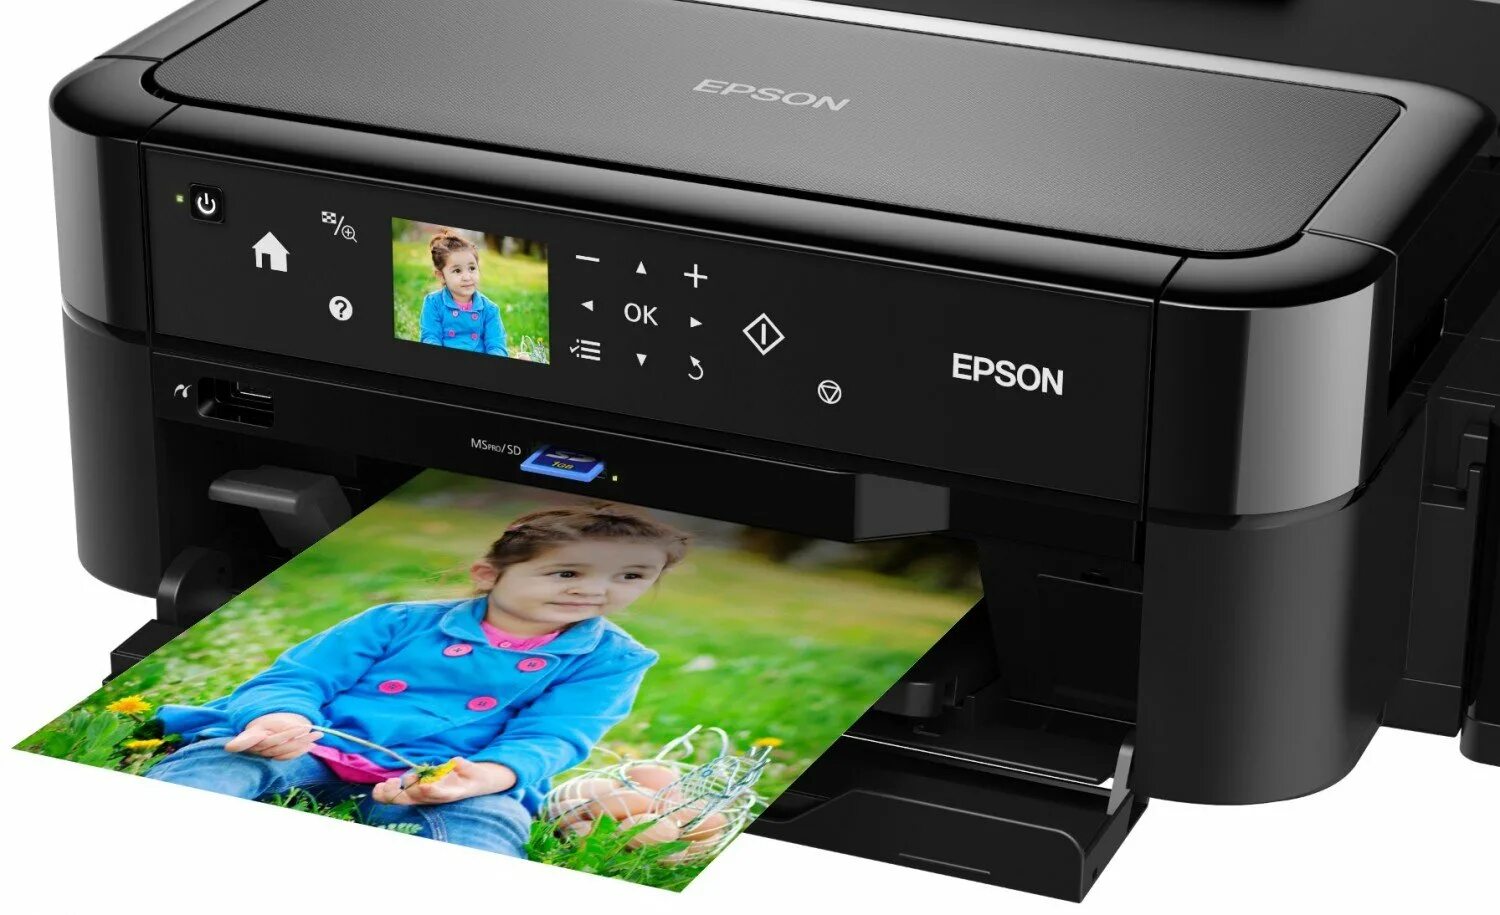 Купить принтер 3 в 1 недорого. Принтер струйный Epson l810. Принтеры Эпсон 810. Epson 810 принтер цветной. Epson принтер Epson l810.